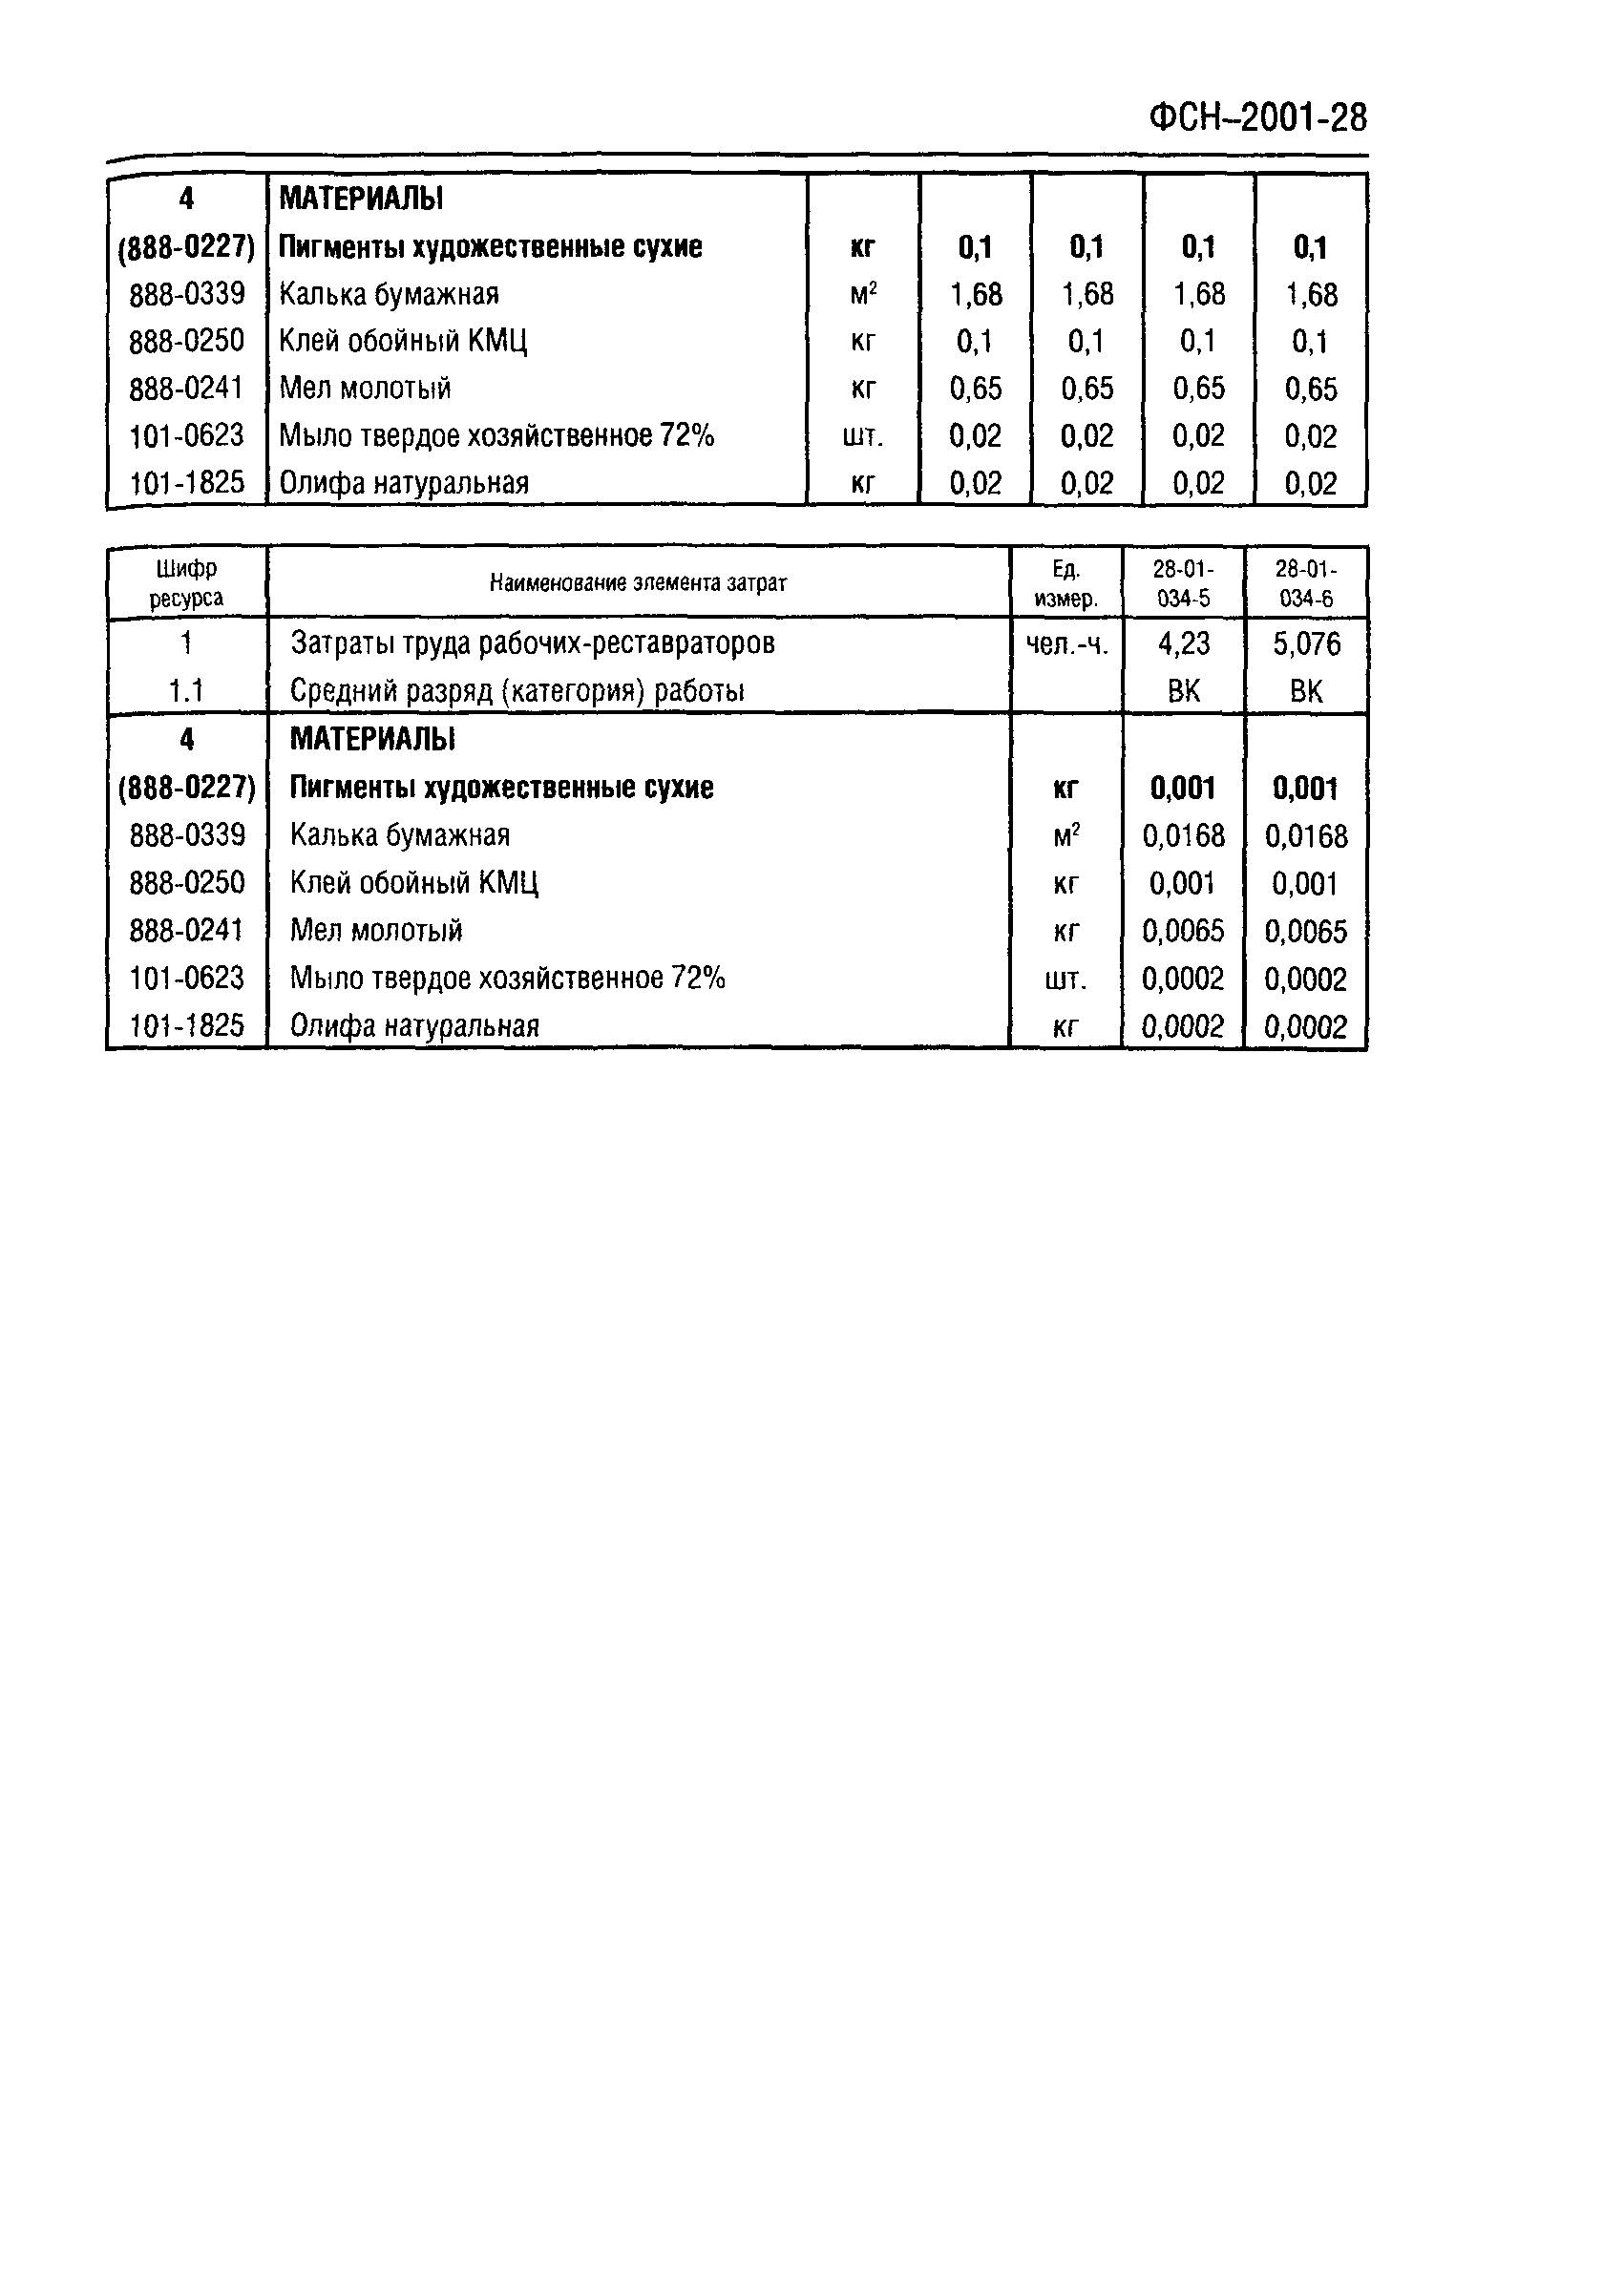 ФСН 2001-28